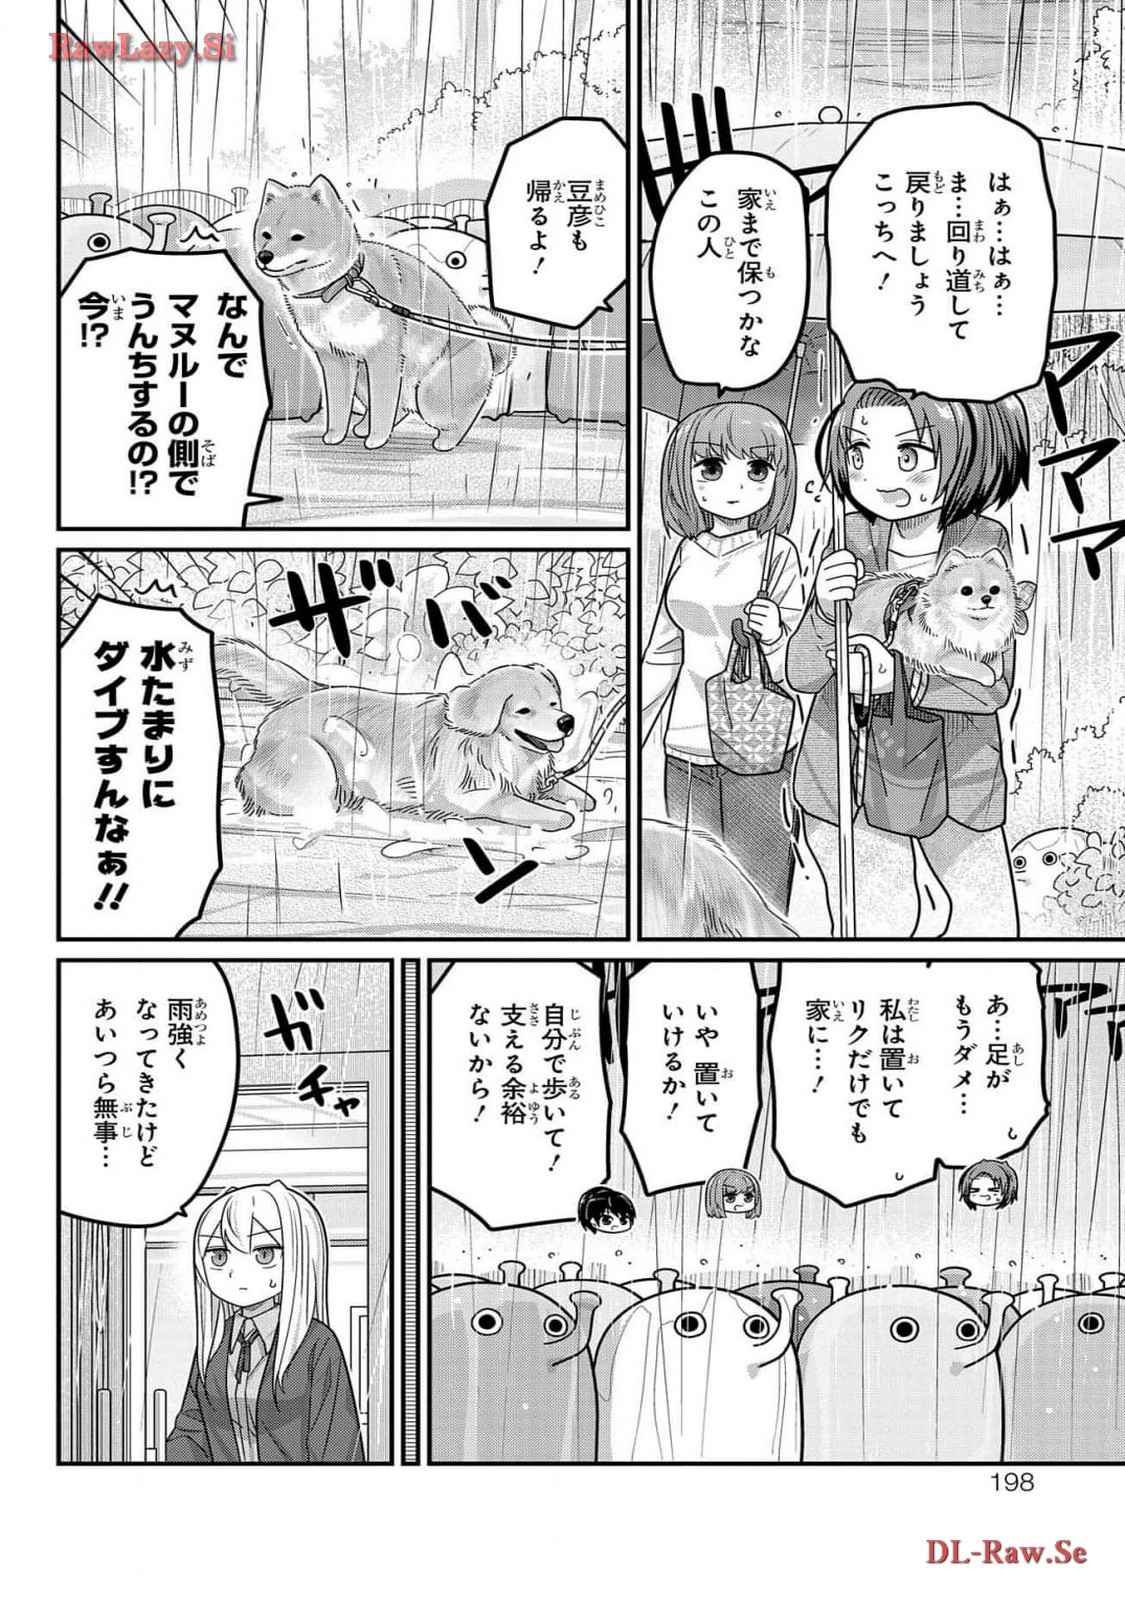 Kawaisugi Crisis - Chapter 108 - Page 14